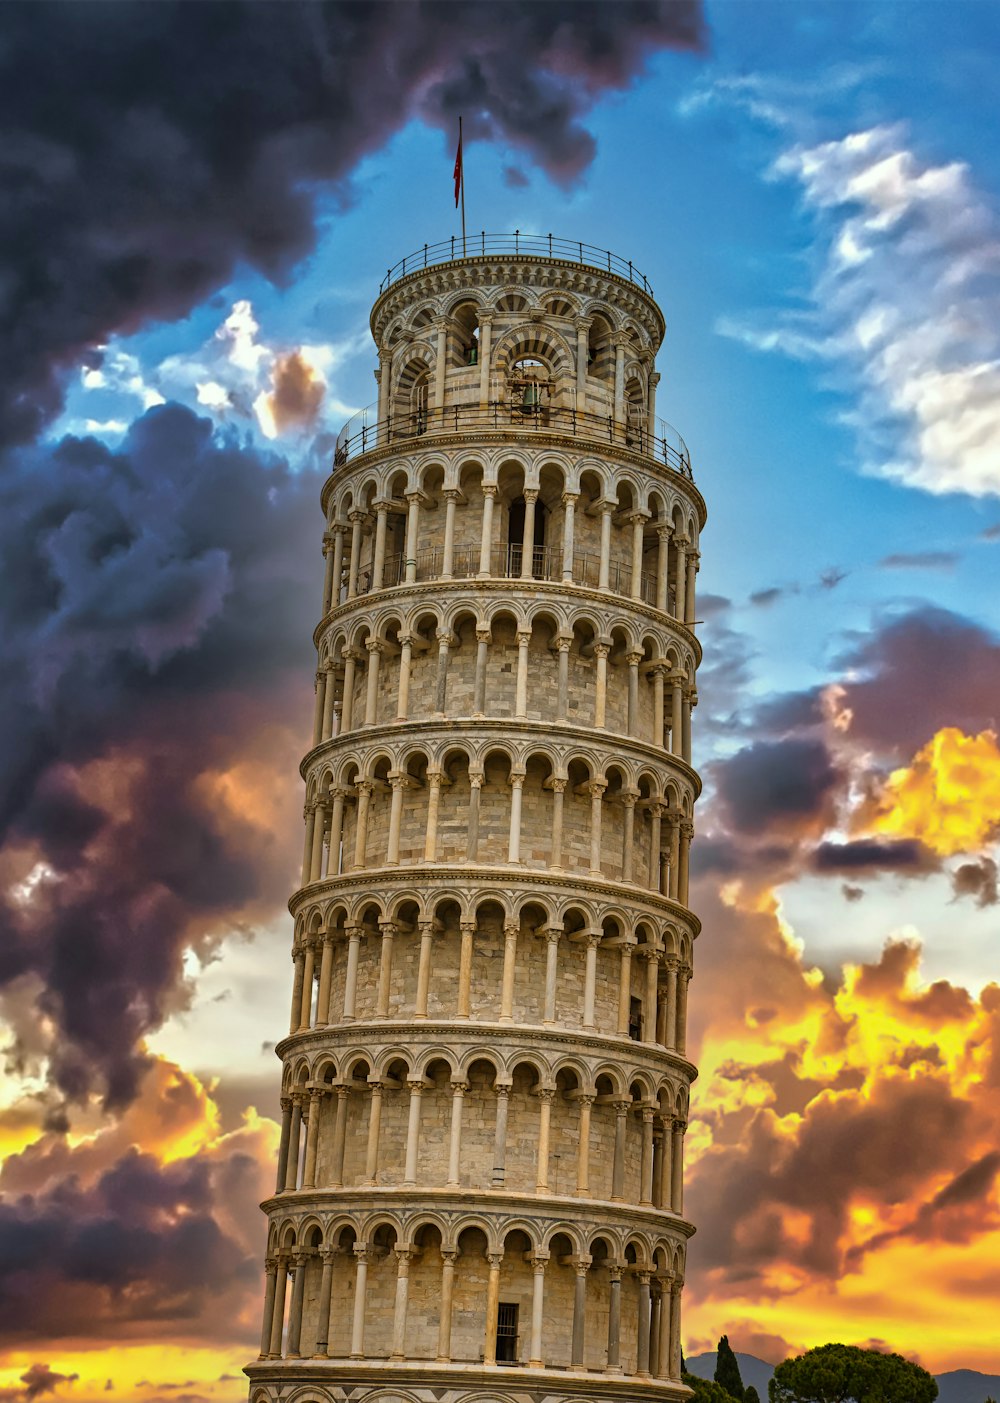 Schiefer Turm von Pisa unter blau-weißem Wolkenhimmel tagsüber